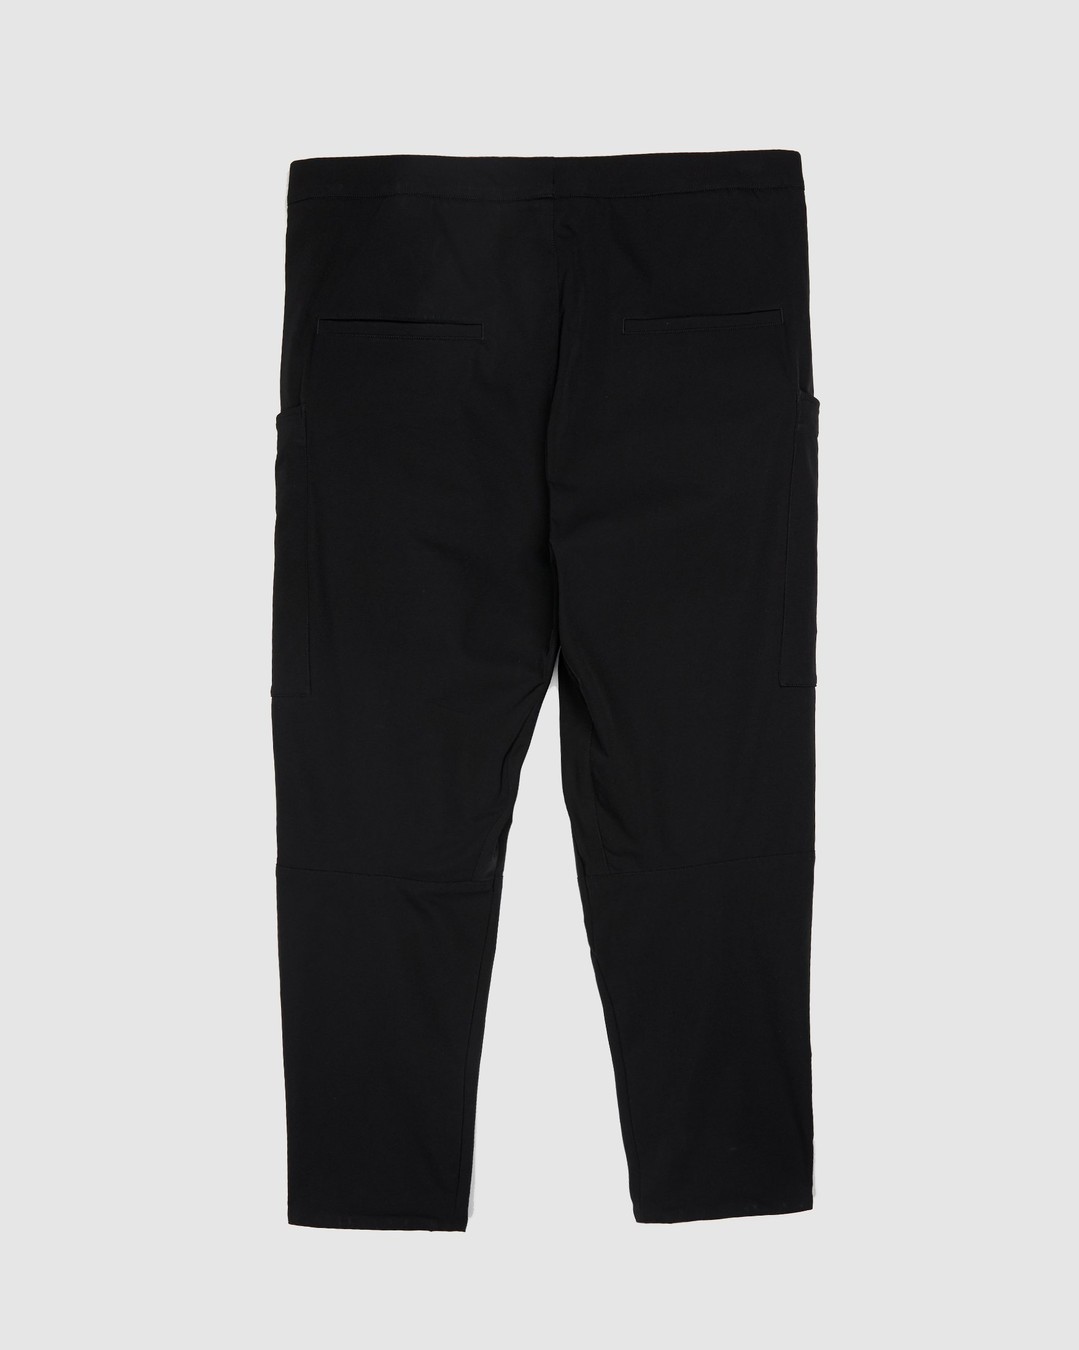 ACRONYM – P31A DS Trouser Black - Pants - Black - Image 2